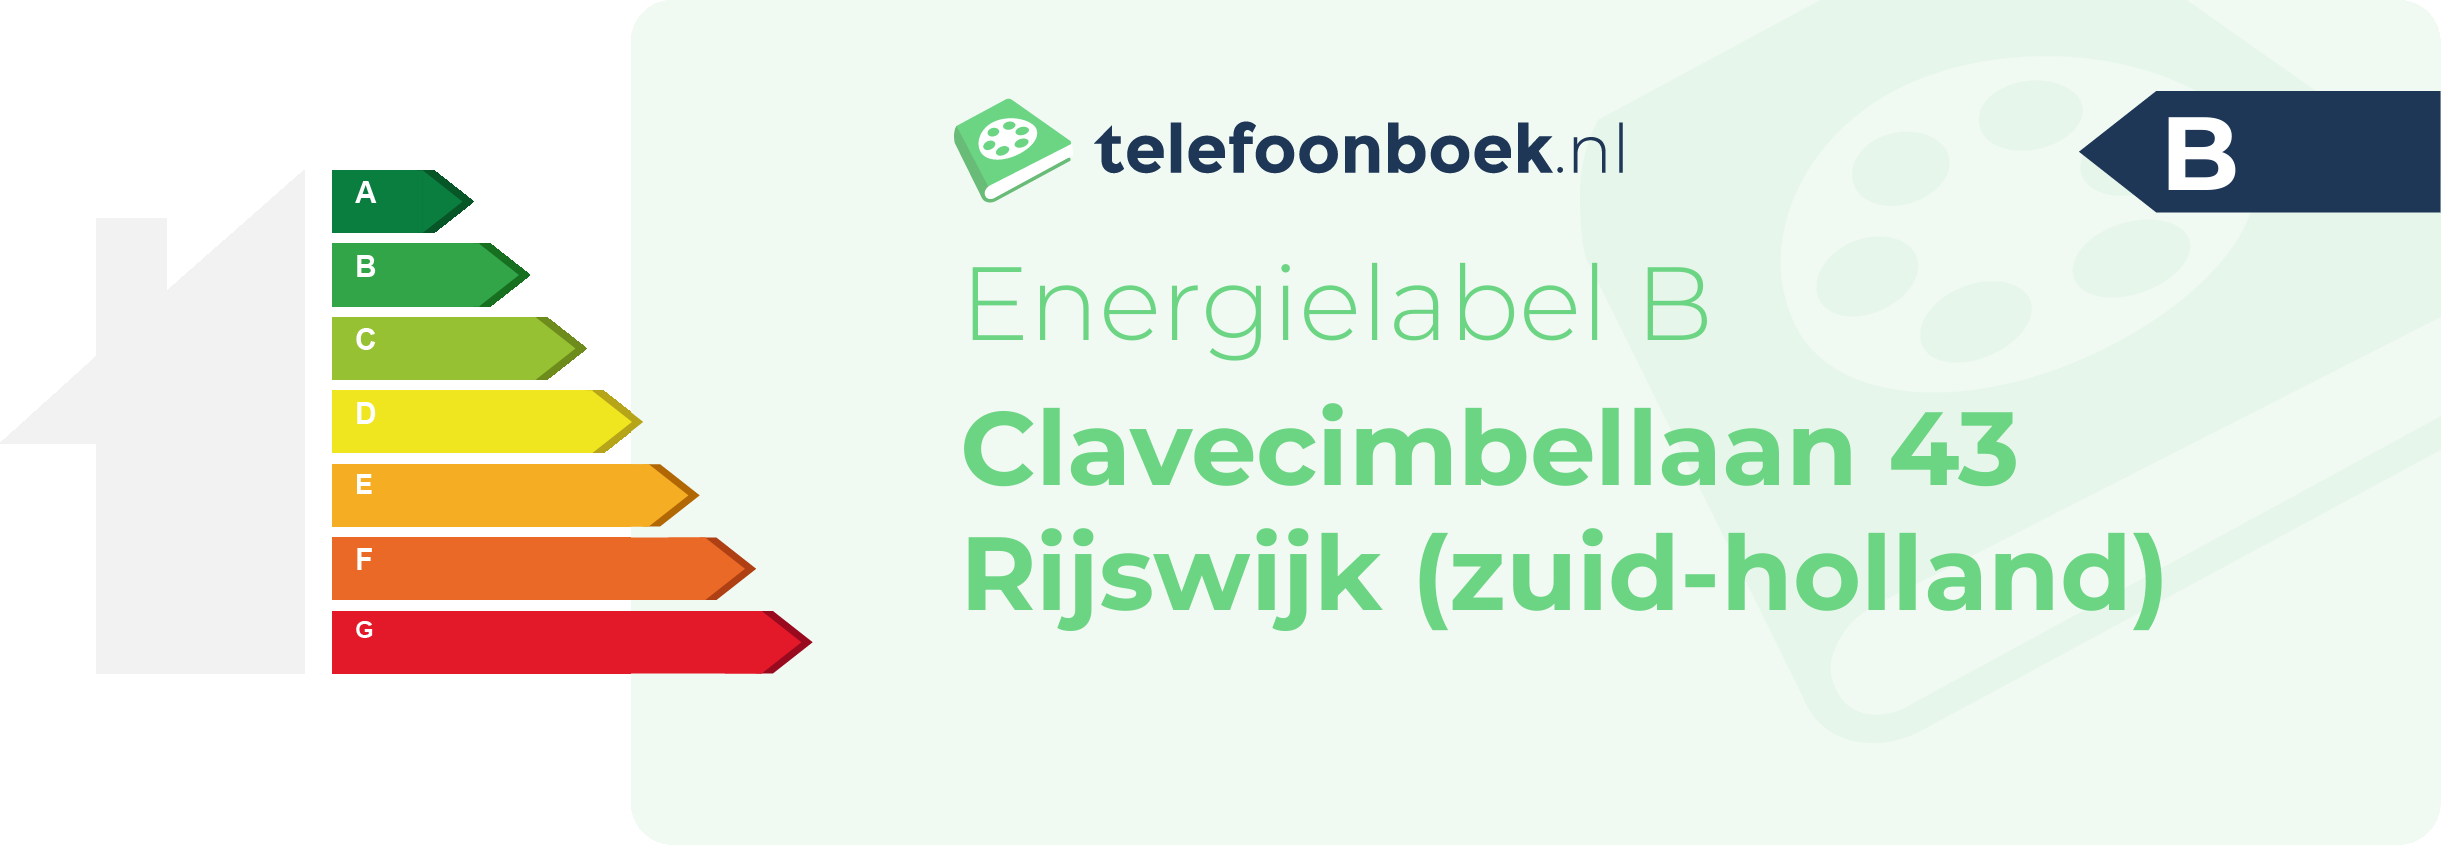 Energielabel Clavecimbellaan 43 Rijswijk (Zuid-Holland)